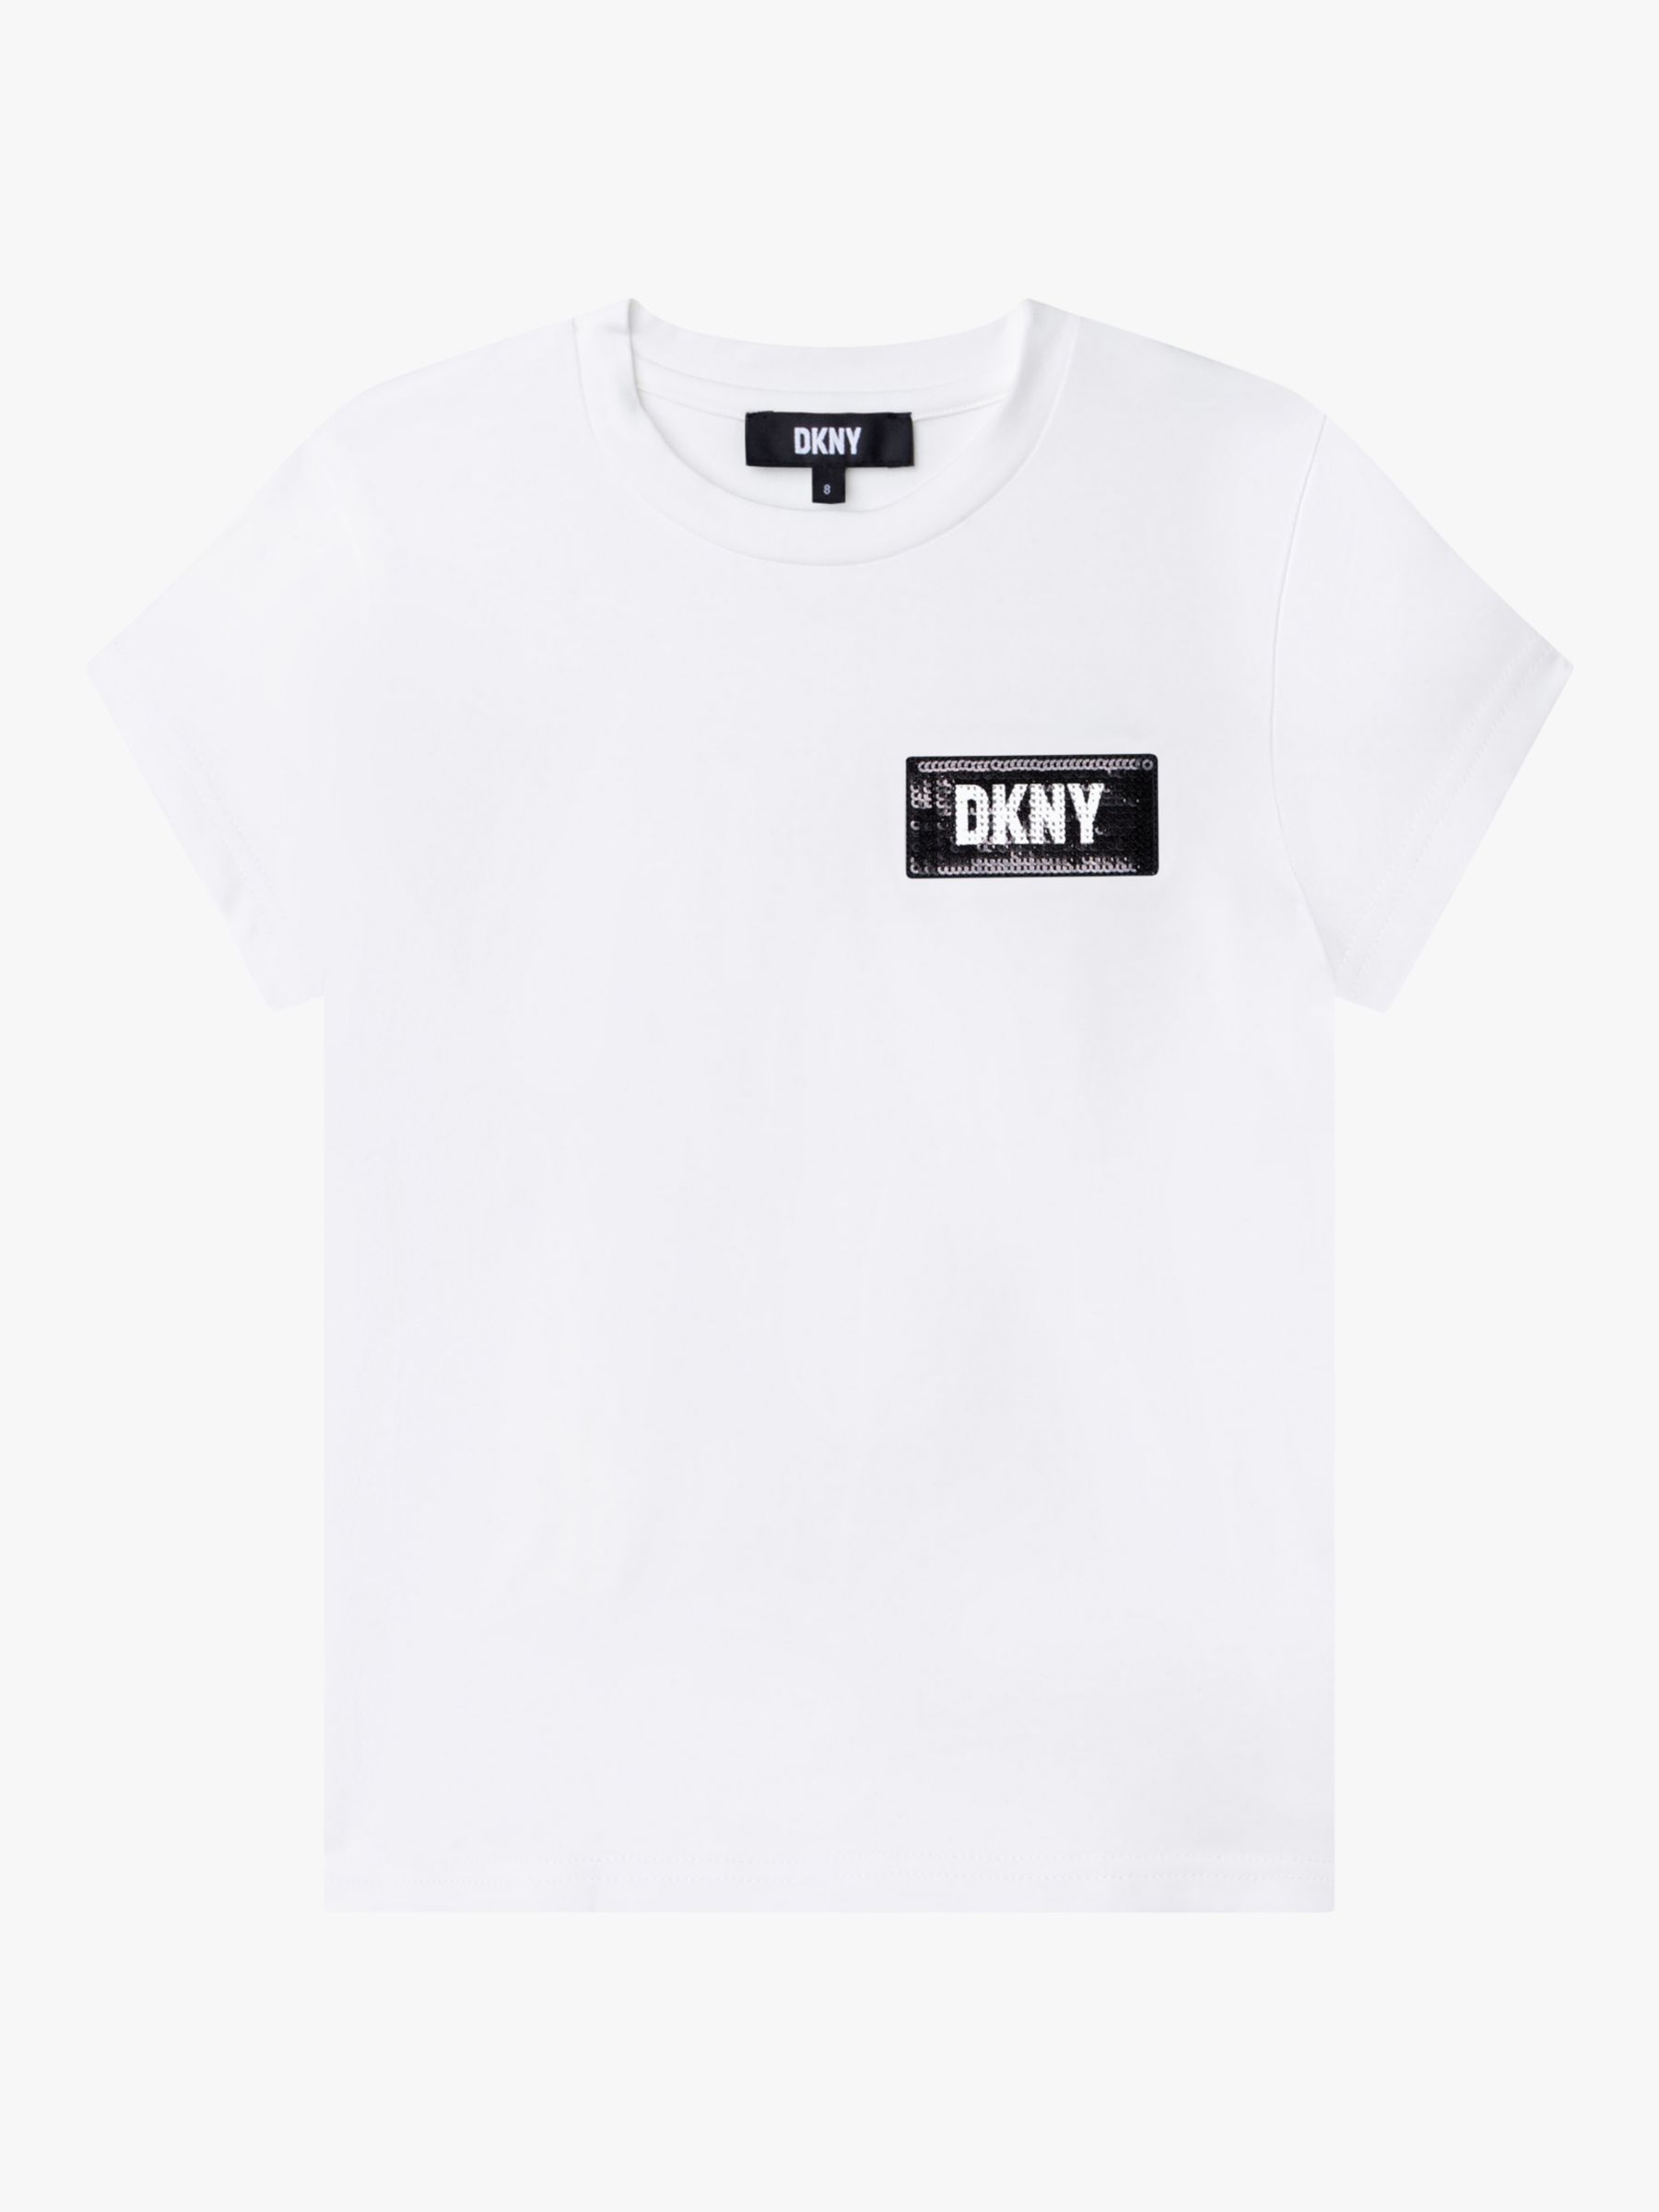 DKNY Kids' Logo Short Sleeve T-Shirt, White, 4 years